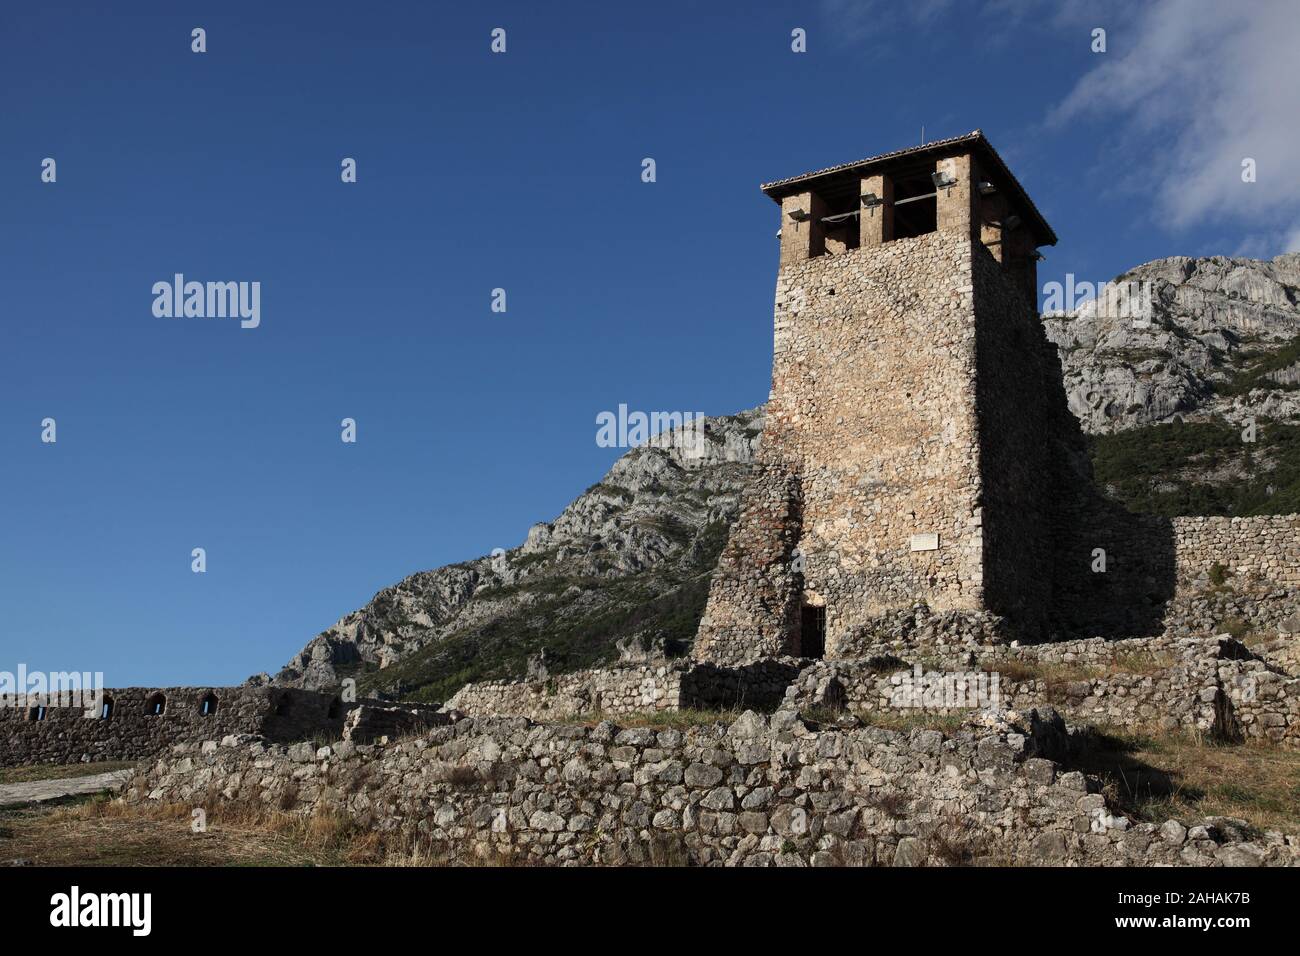 La torre, originariamente un belvedere e post di segnalazione all'interno delle mura del castello di Kruja in Kruja, Albania, utilizzato da Skanderberg durante il suo regno. Foto Stock